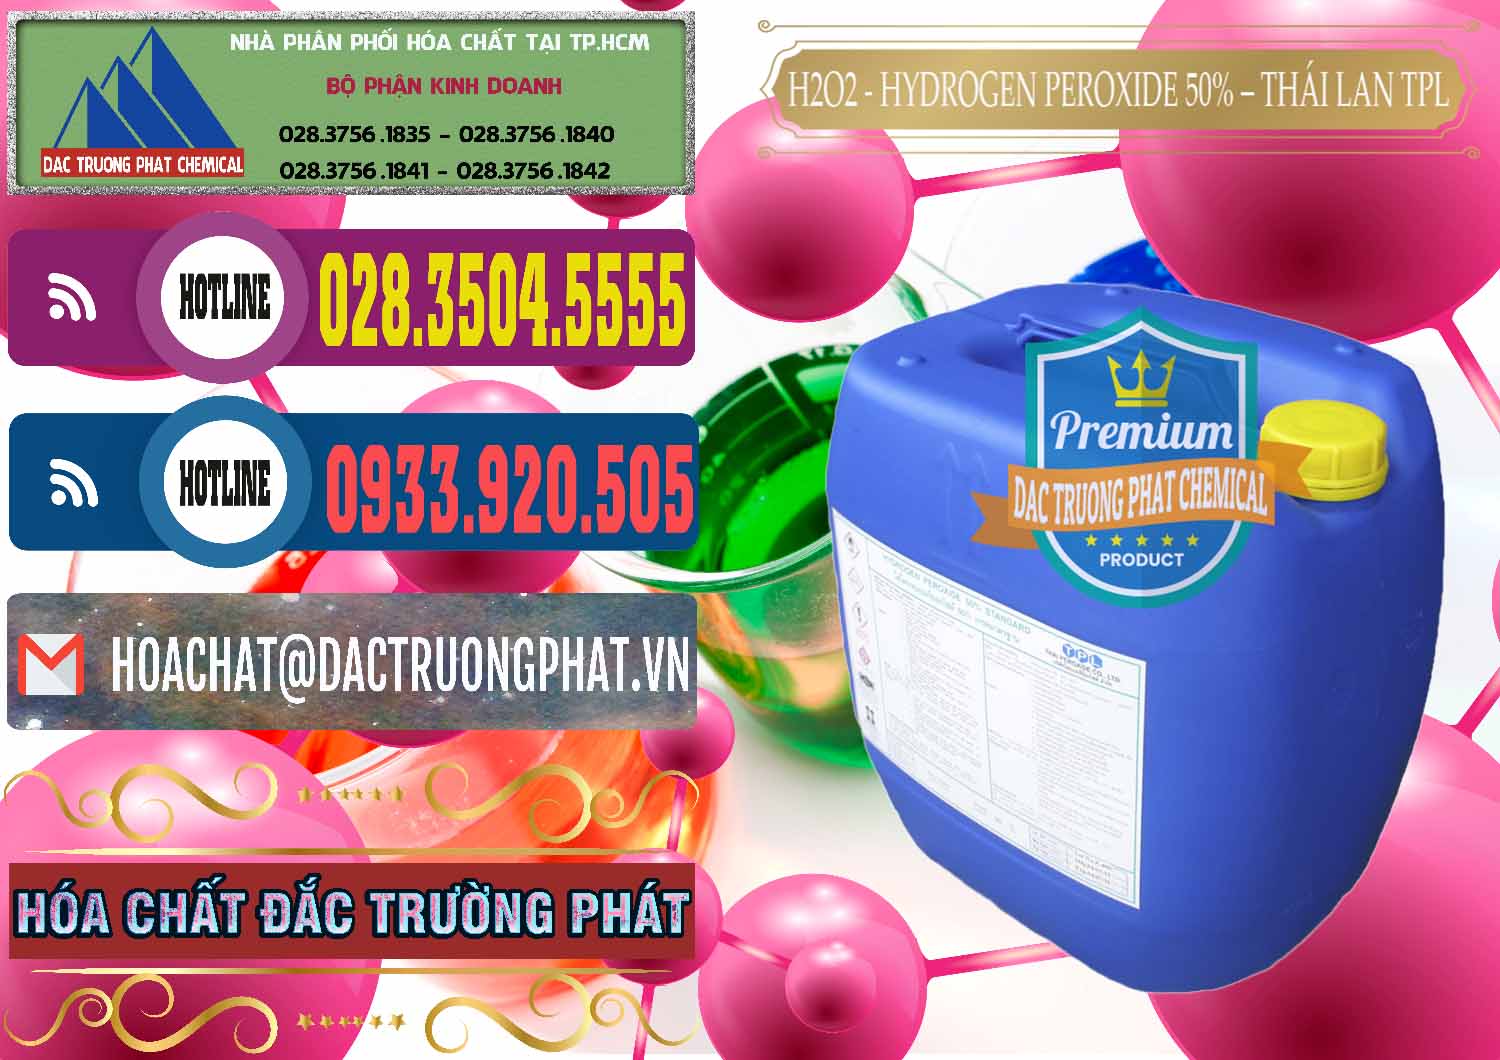 Đơn vị chuyên phân phối - bán H2O2 - Hydrogen Peroxide 50% Thái Lan TPL - 0076 - Công ty bán và cung cấp hóa chất tại TP.HCM - muabanhoachat.com.vn